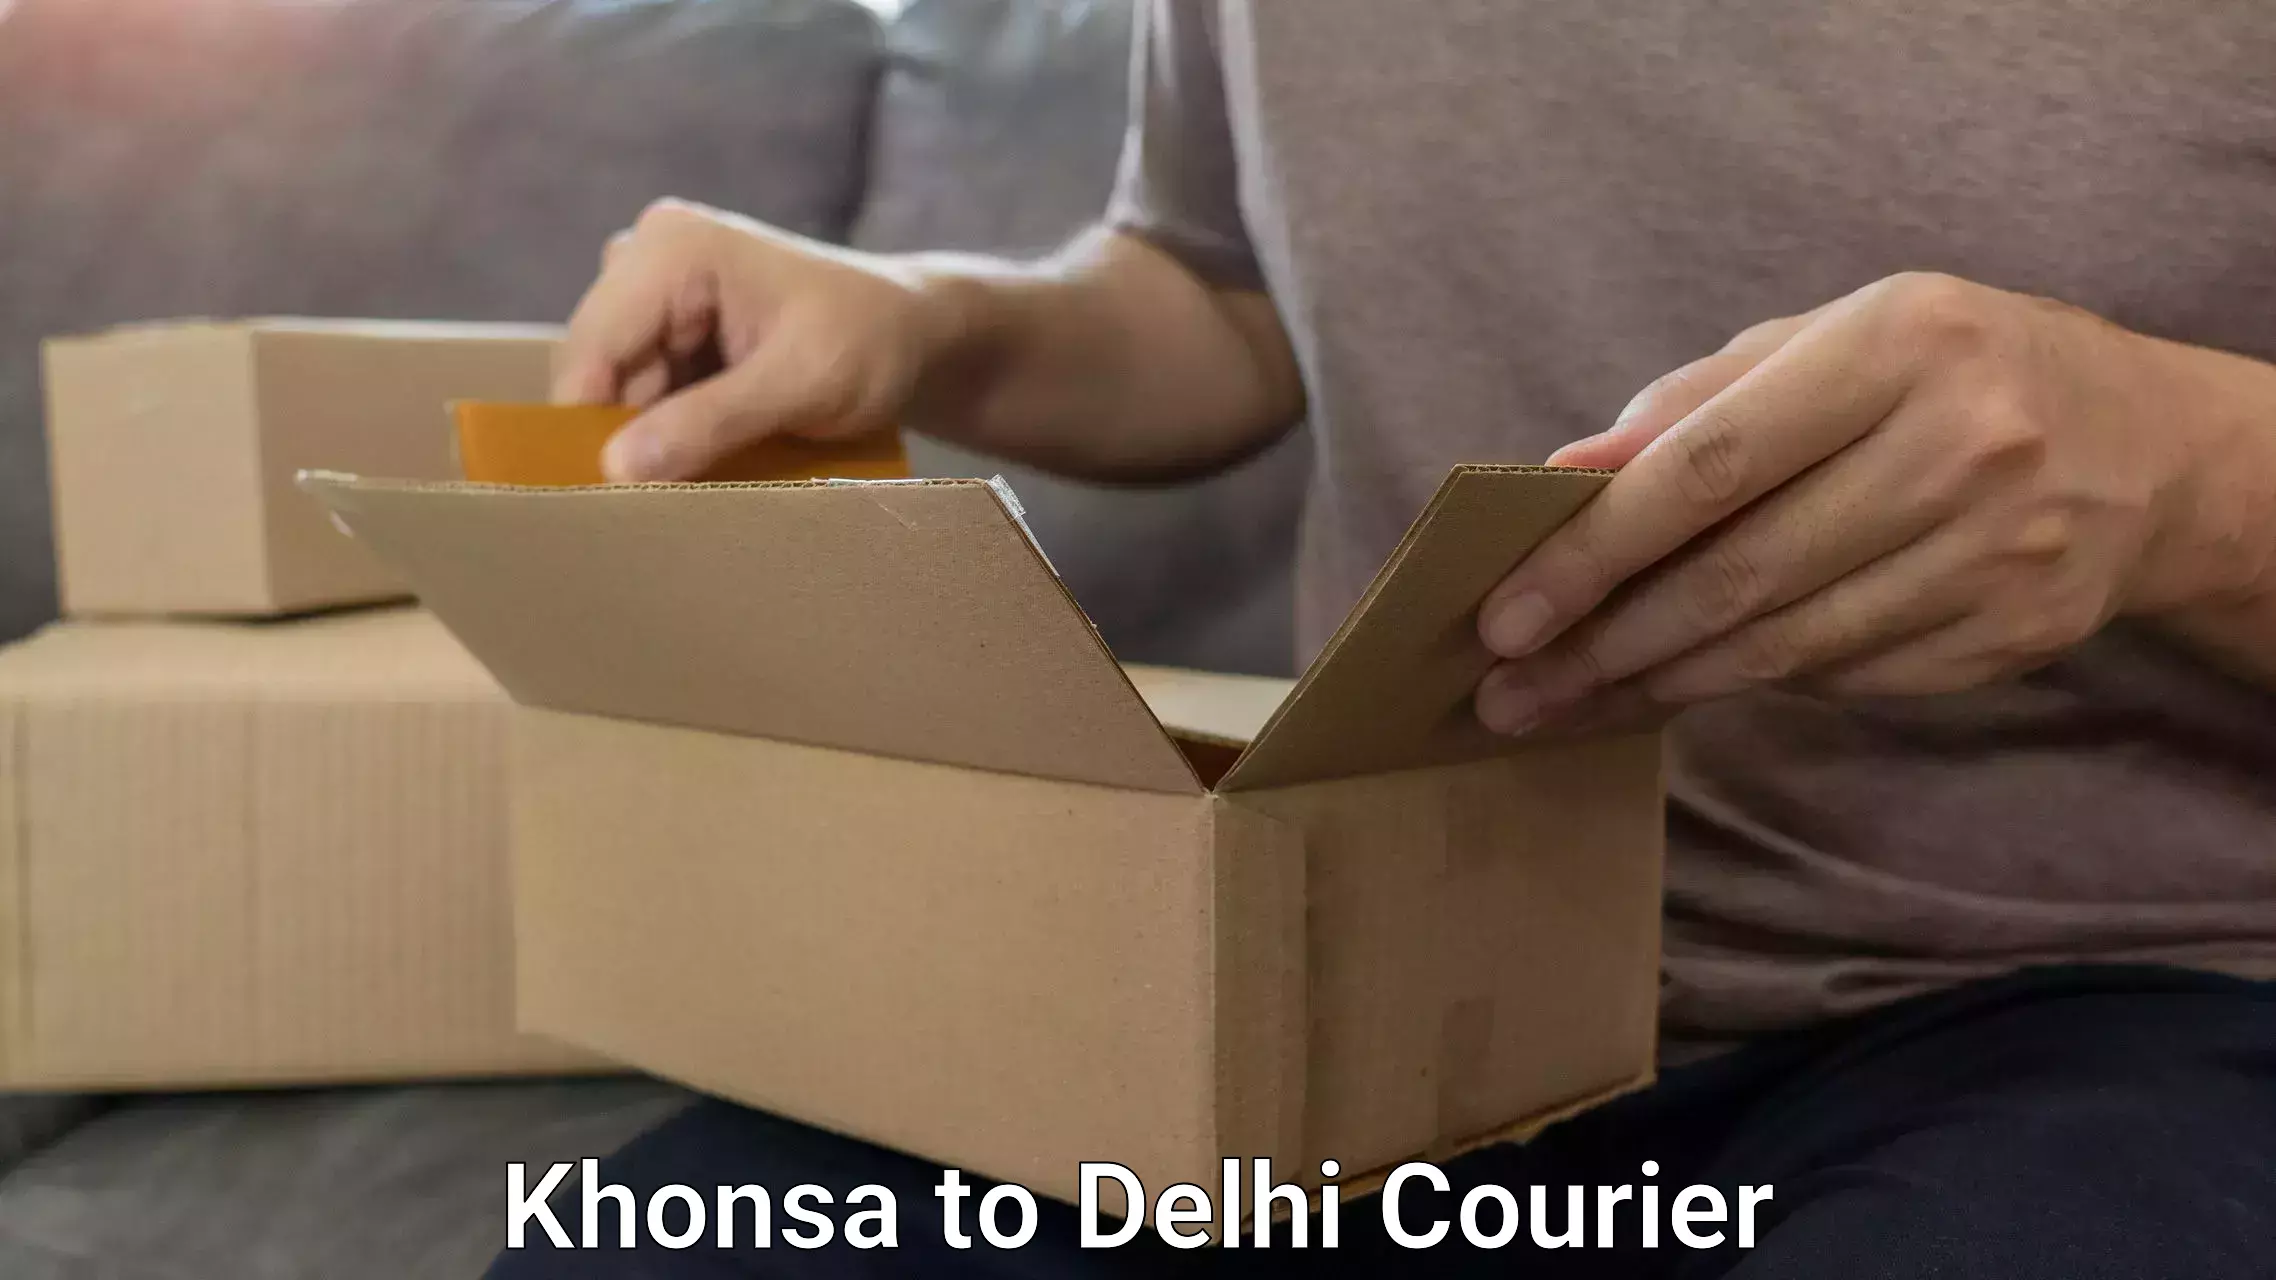 Luggage transfer service Khonsa to University of Delhi